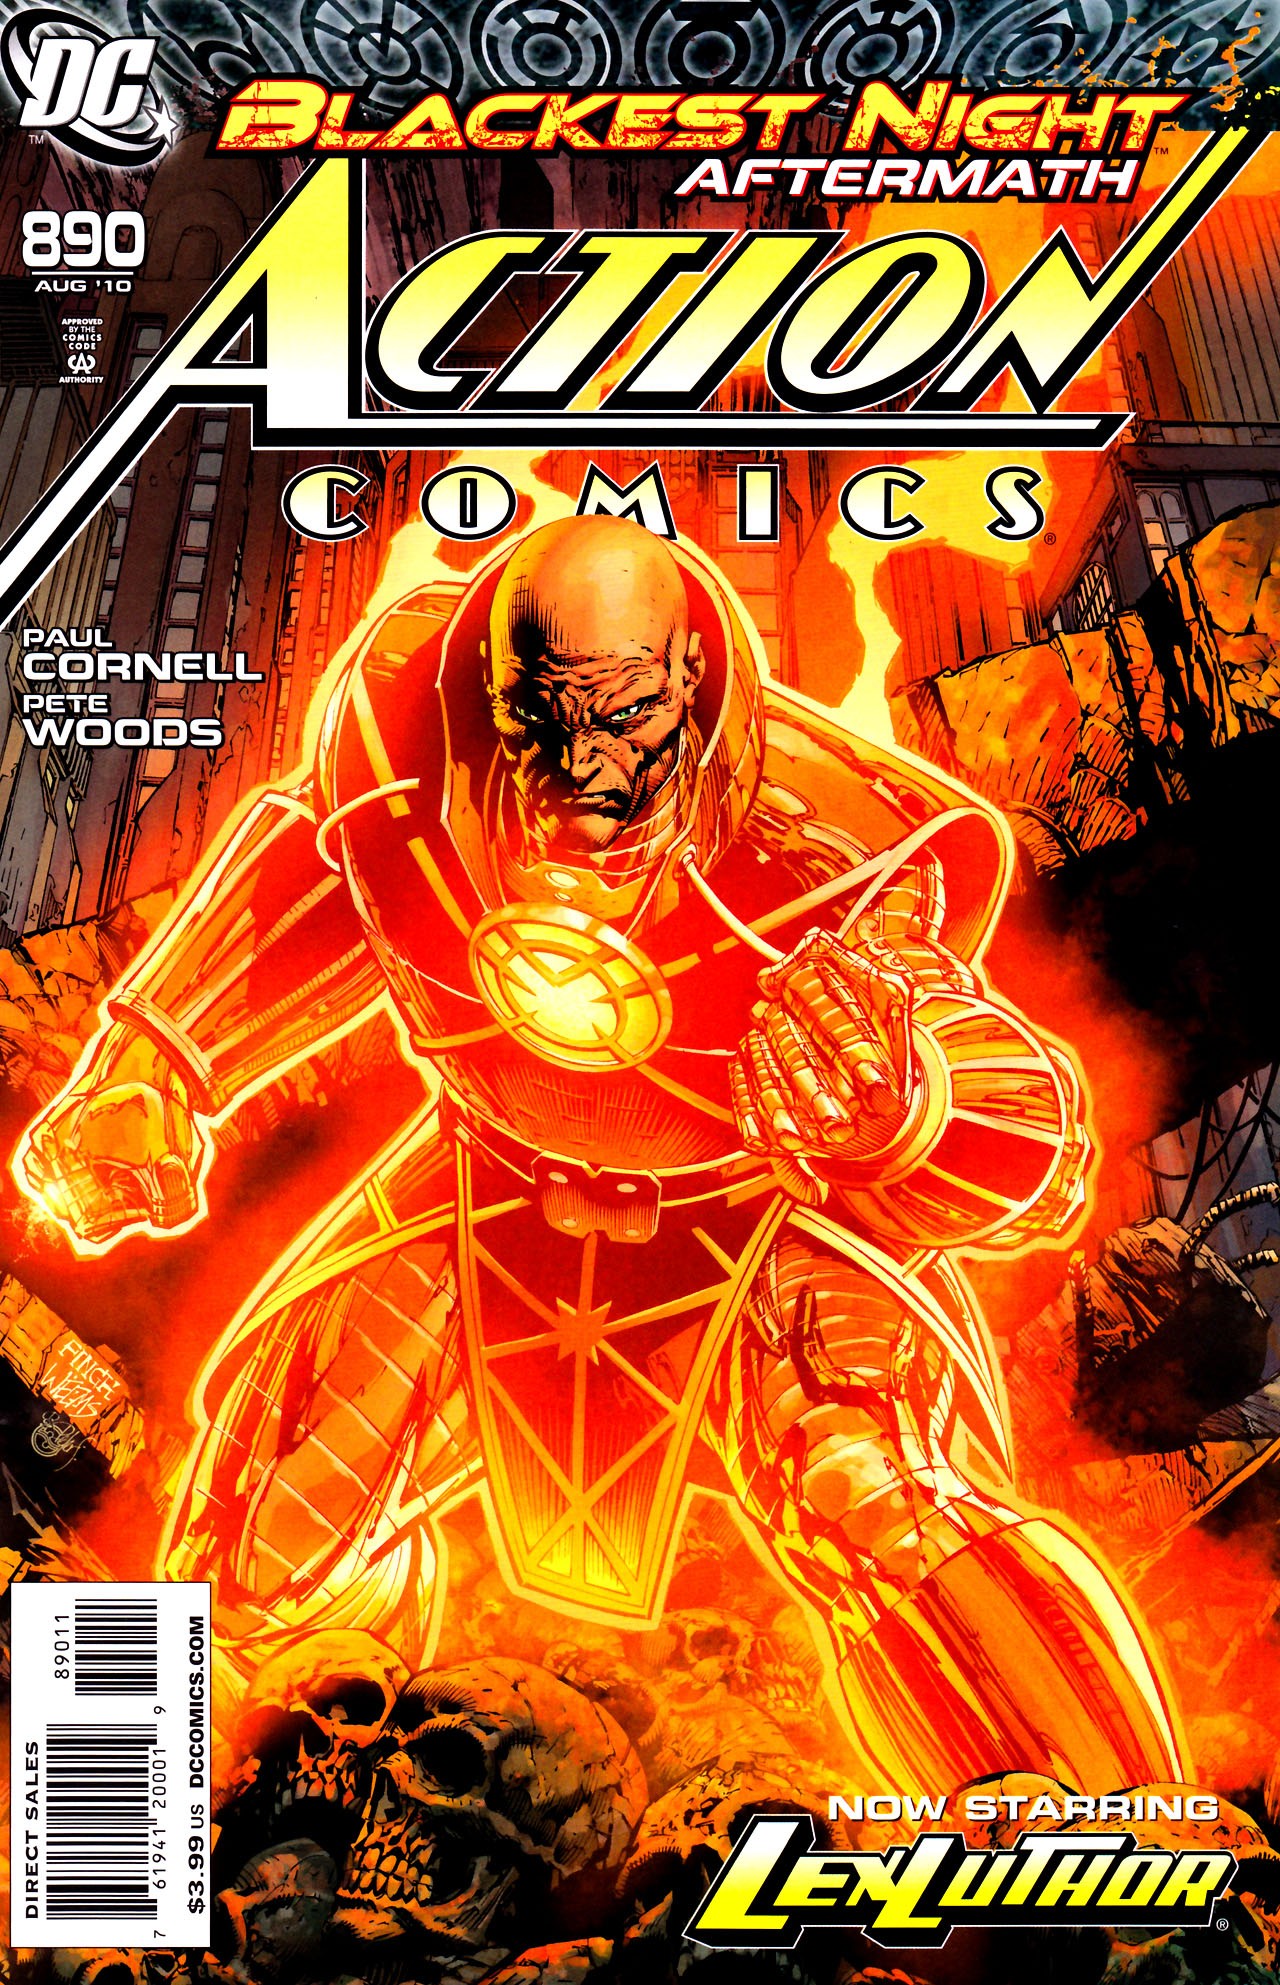 Action Comics Vol. 1 #890